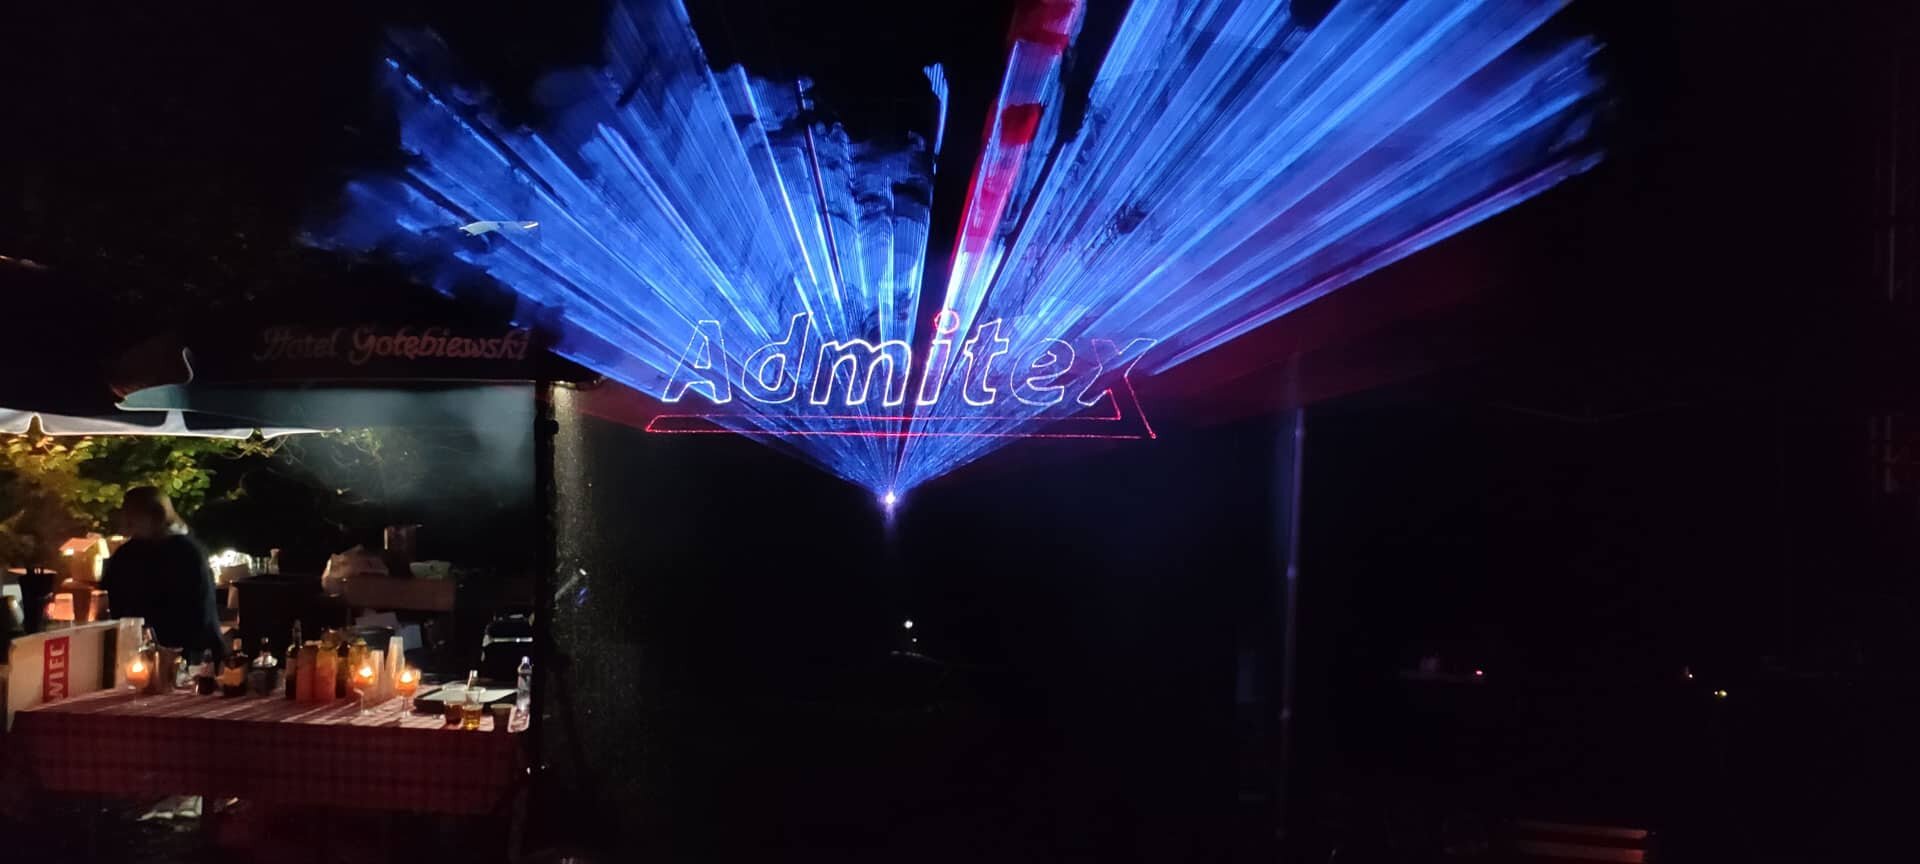 przestrzenne logo laserowe admitex